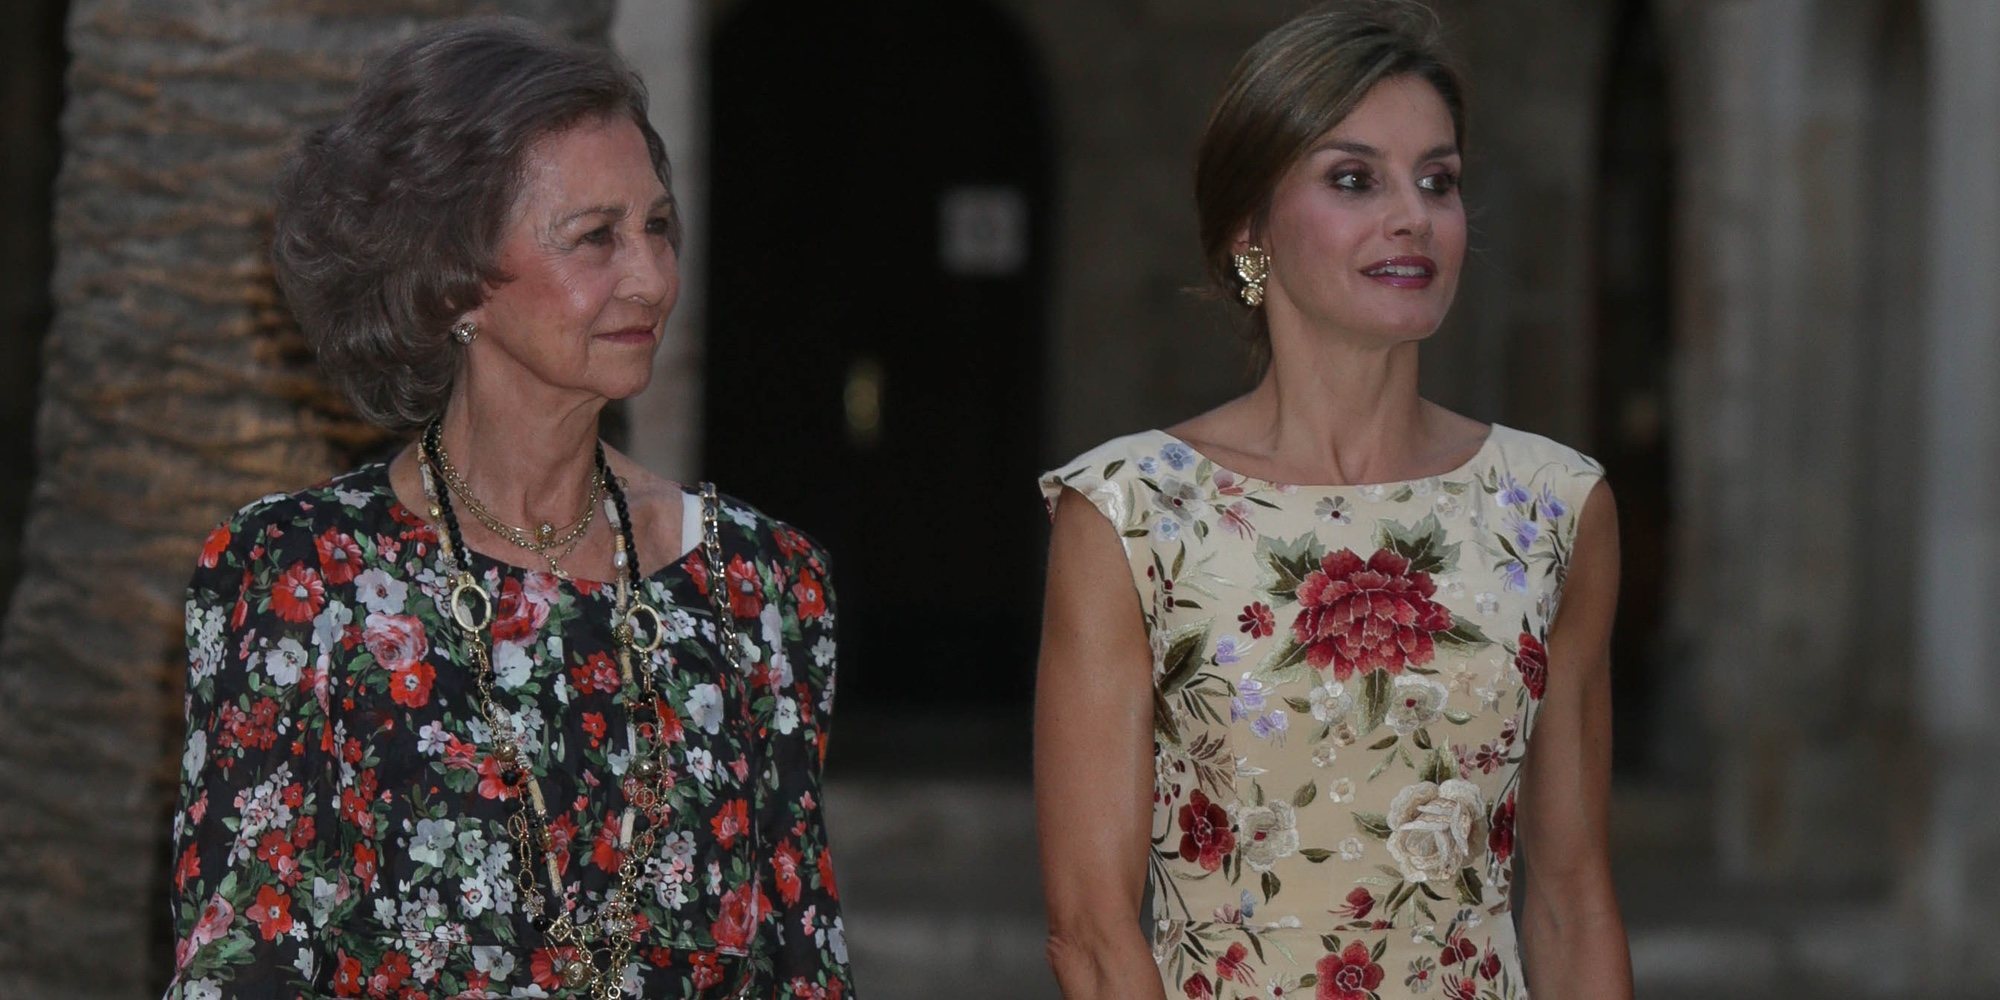 La tuitera que difundió el rifirrafe de la Reina Sofía y la Reina Letizia: "Tengo miedo de que vayan a por mí"